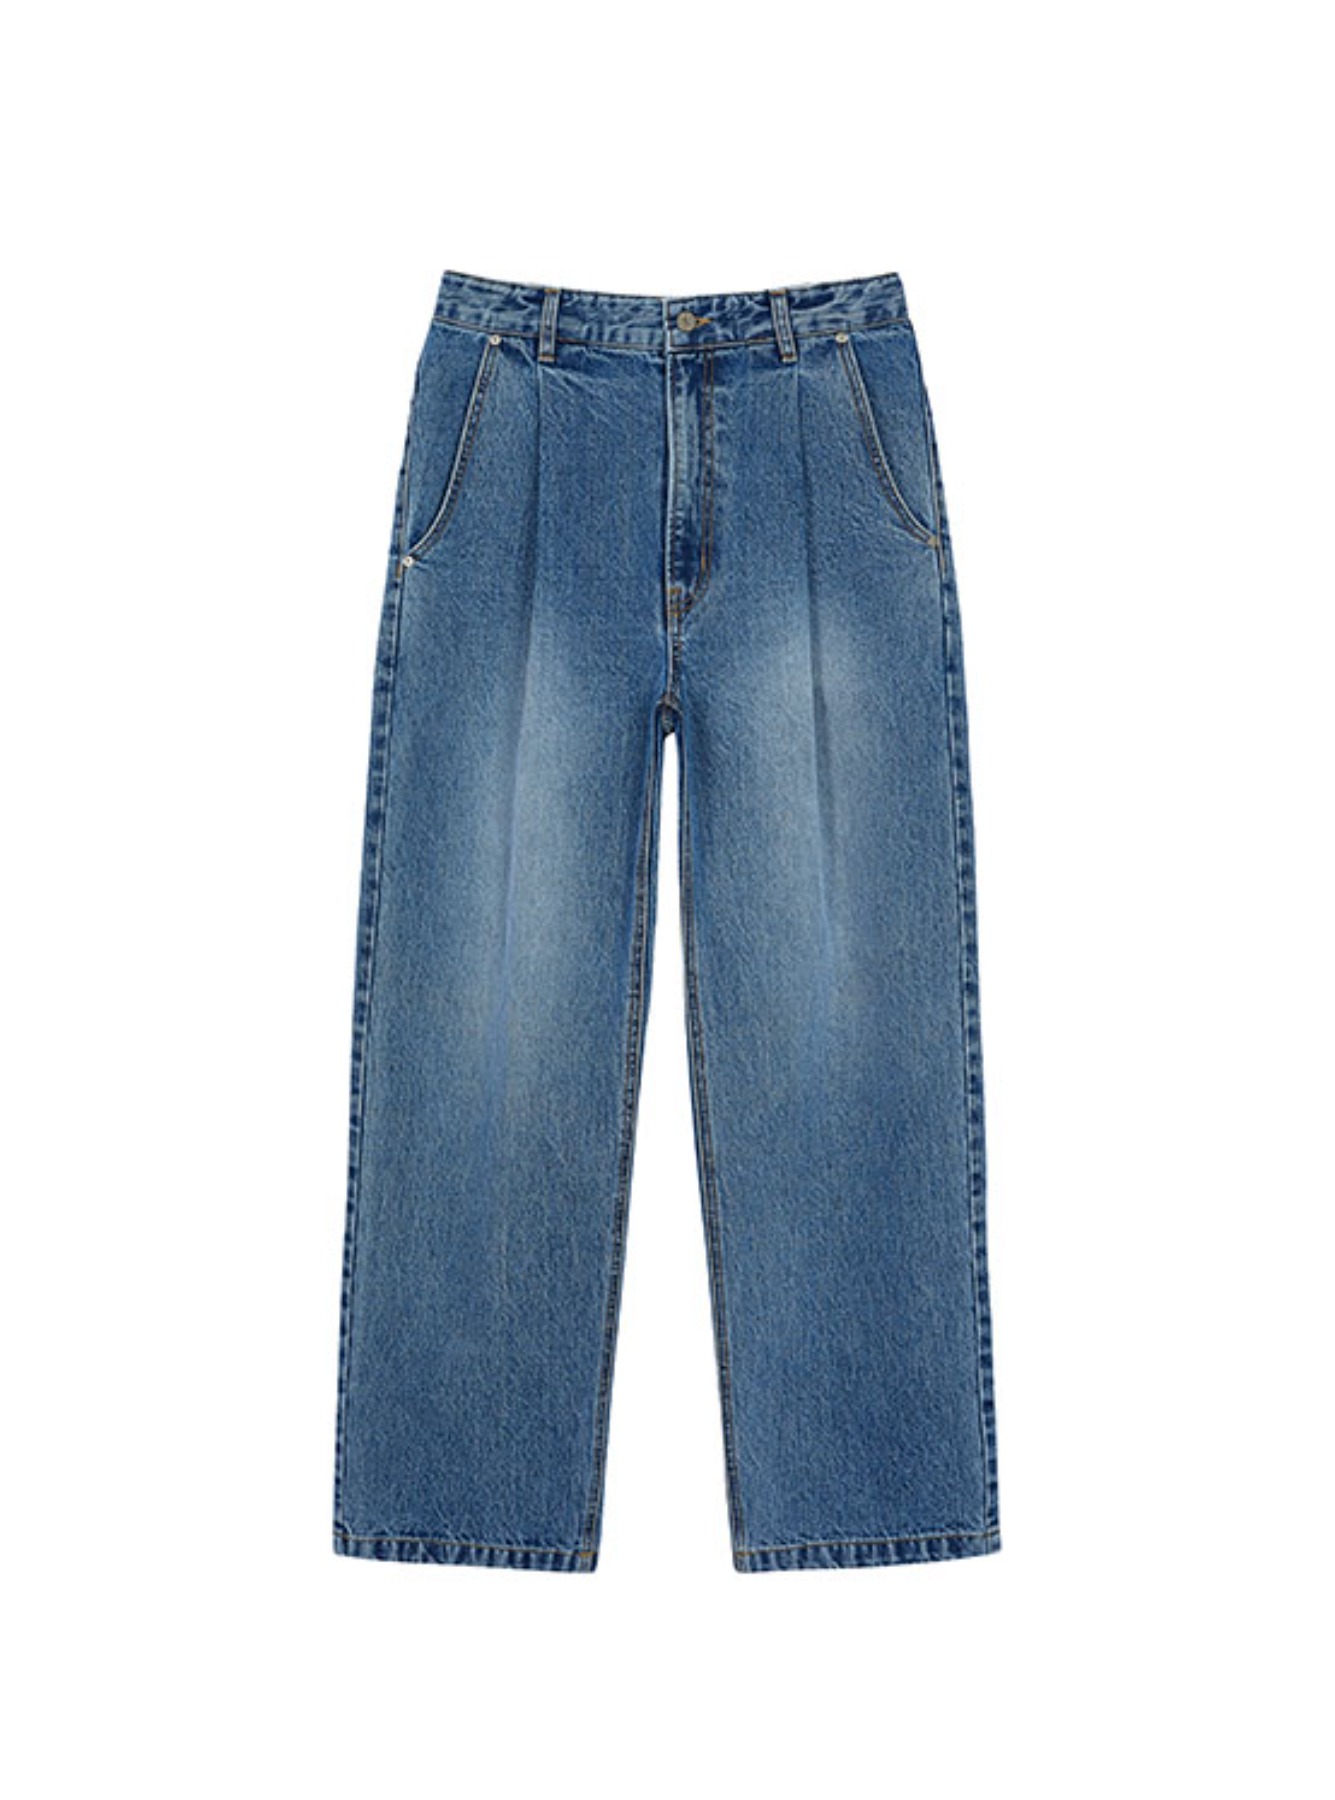 Pintuck Jeans in Blue VJ2ML812-22